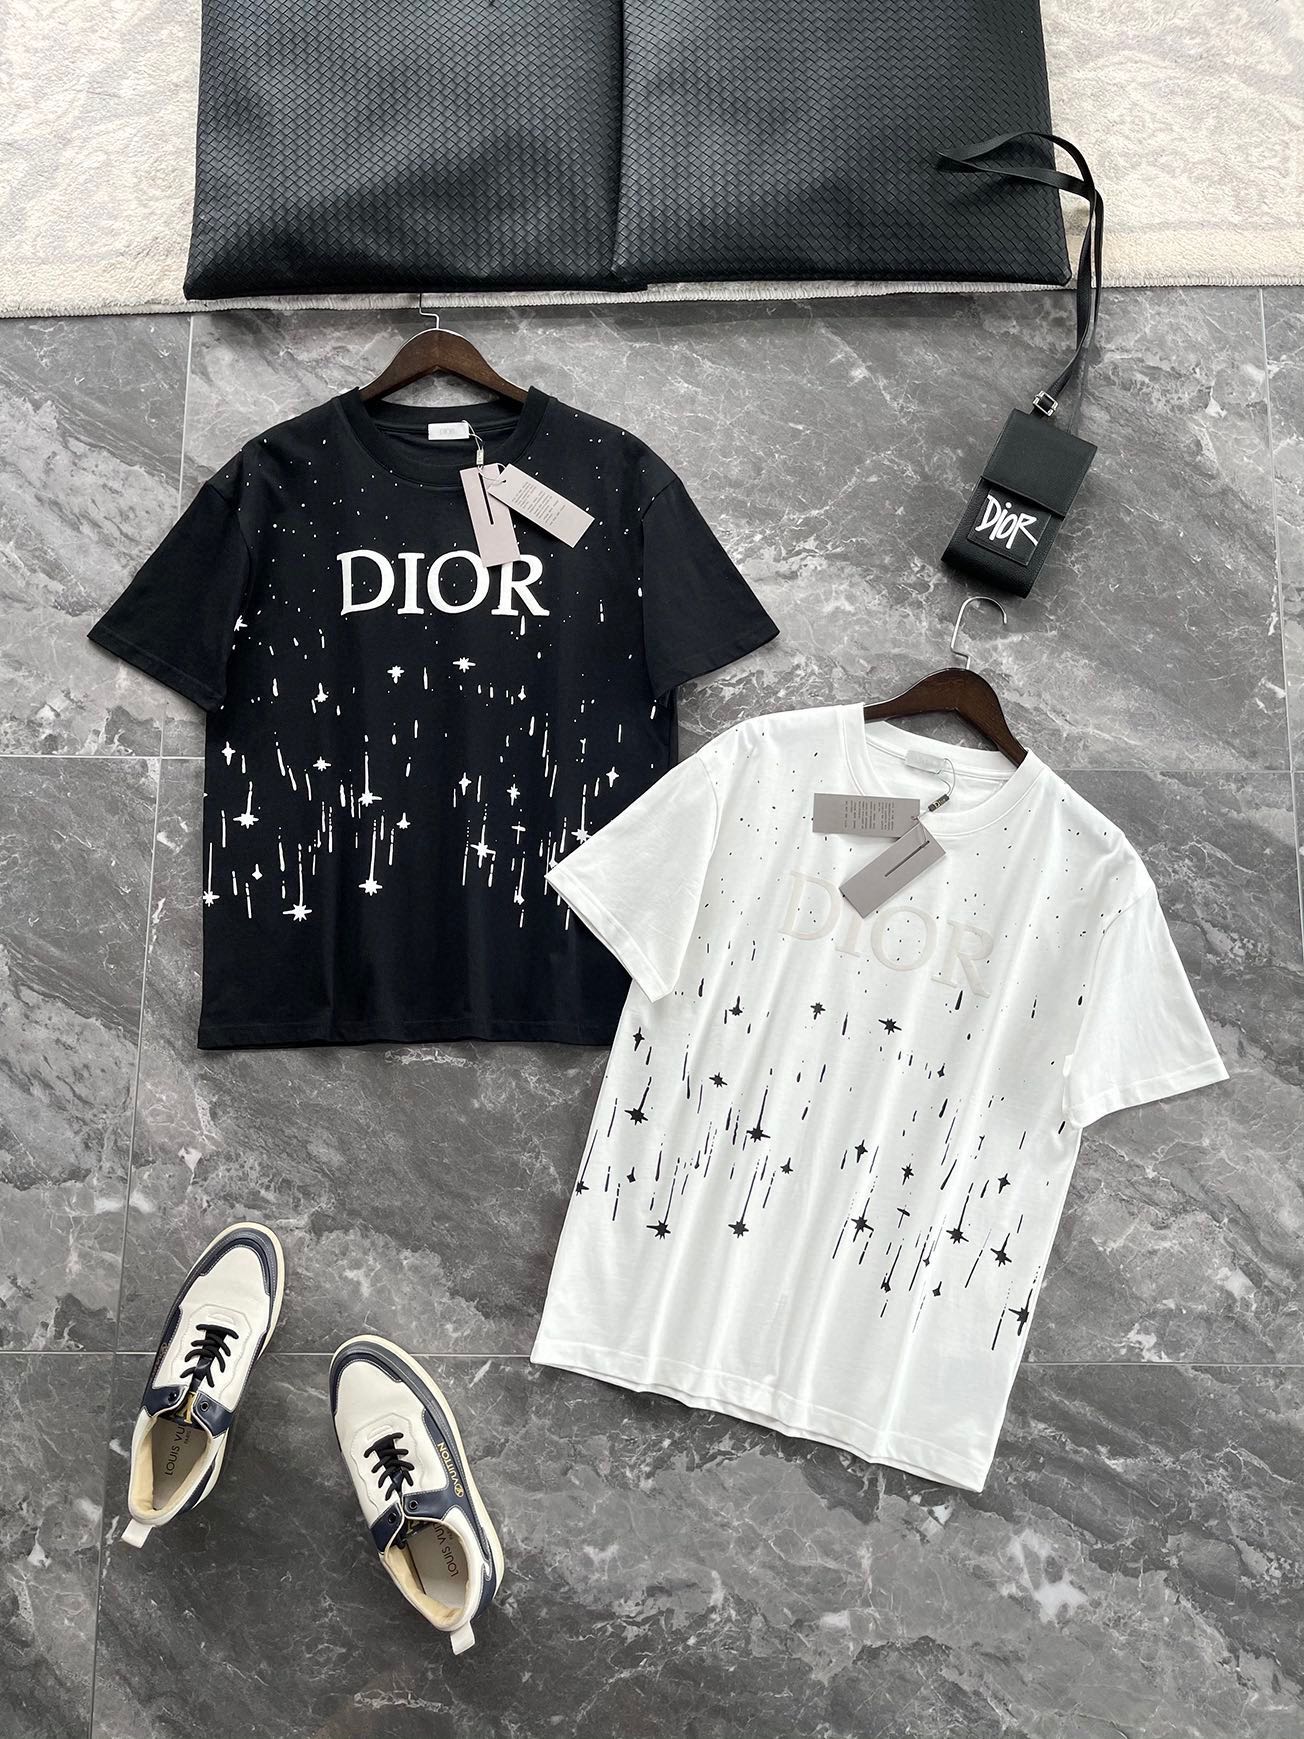 Dior Vêtements T-Shirt Noir Blanc Imprimé Unisexe Coton tricoté Tricot Collection printemps – été Fashion Manches courtes